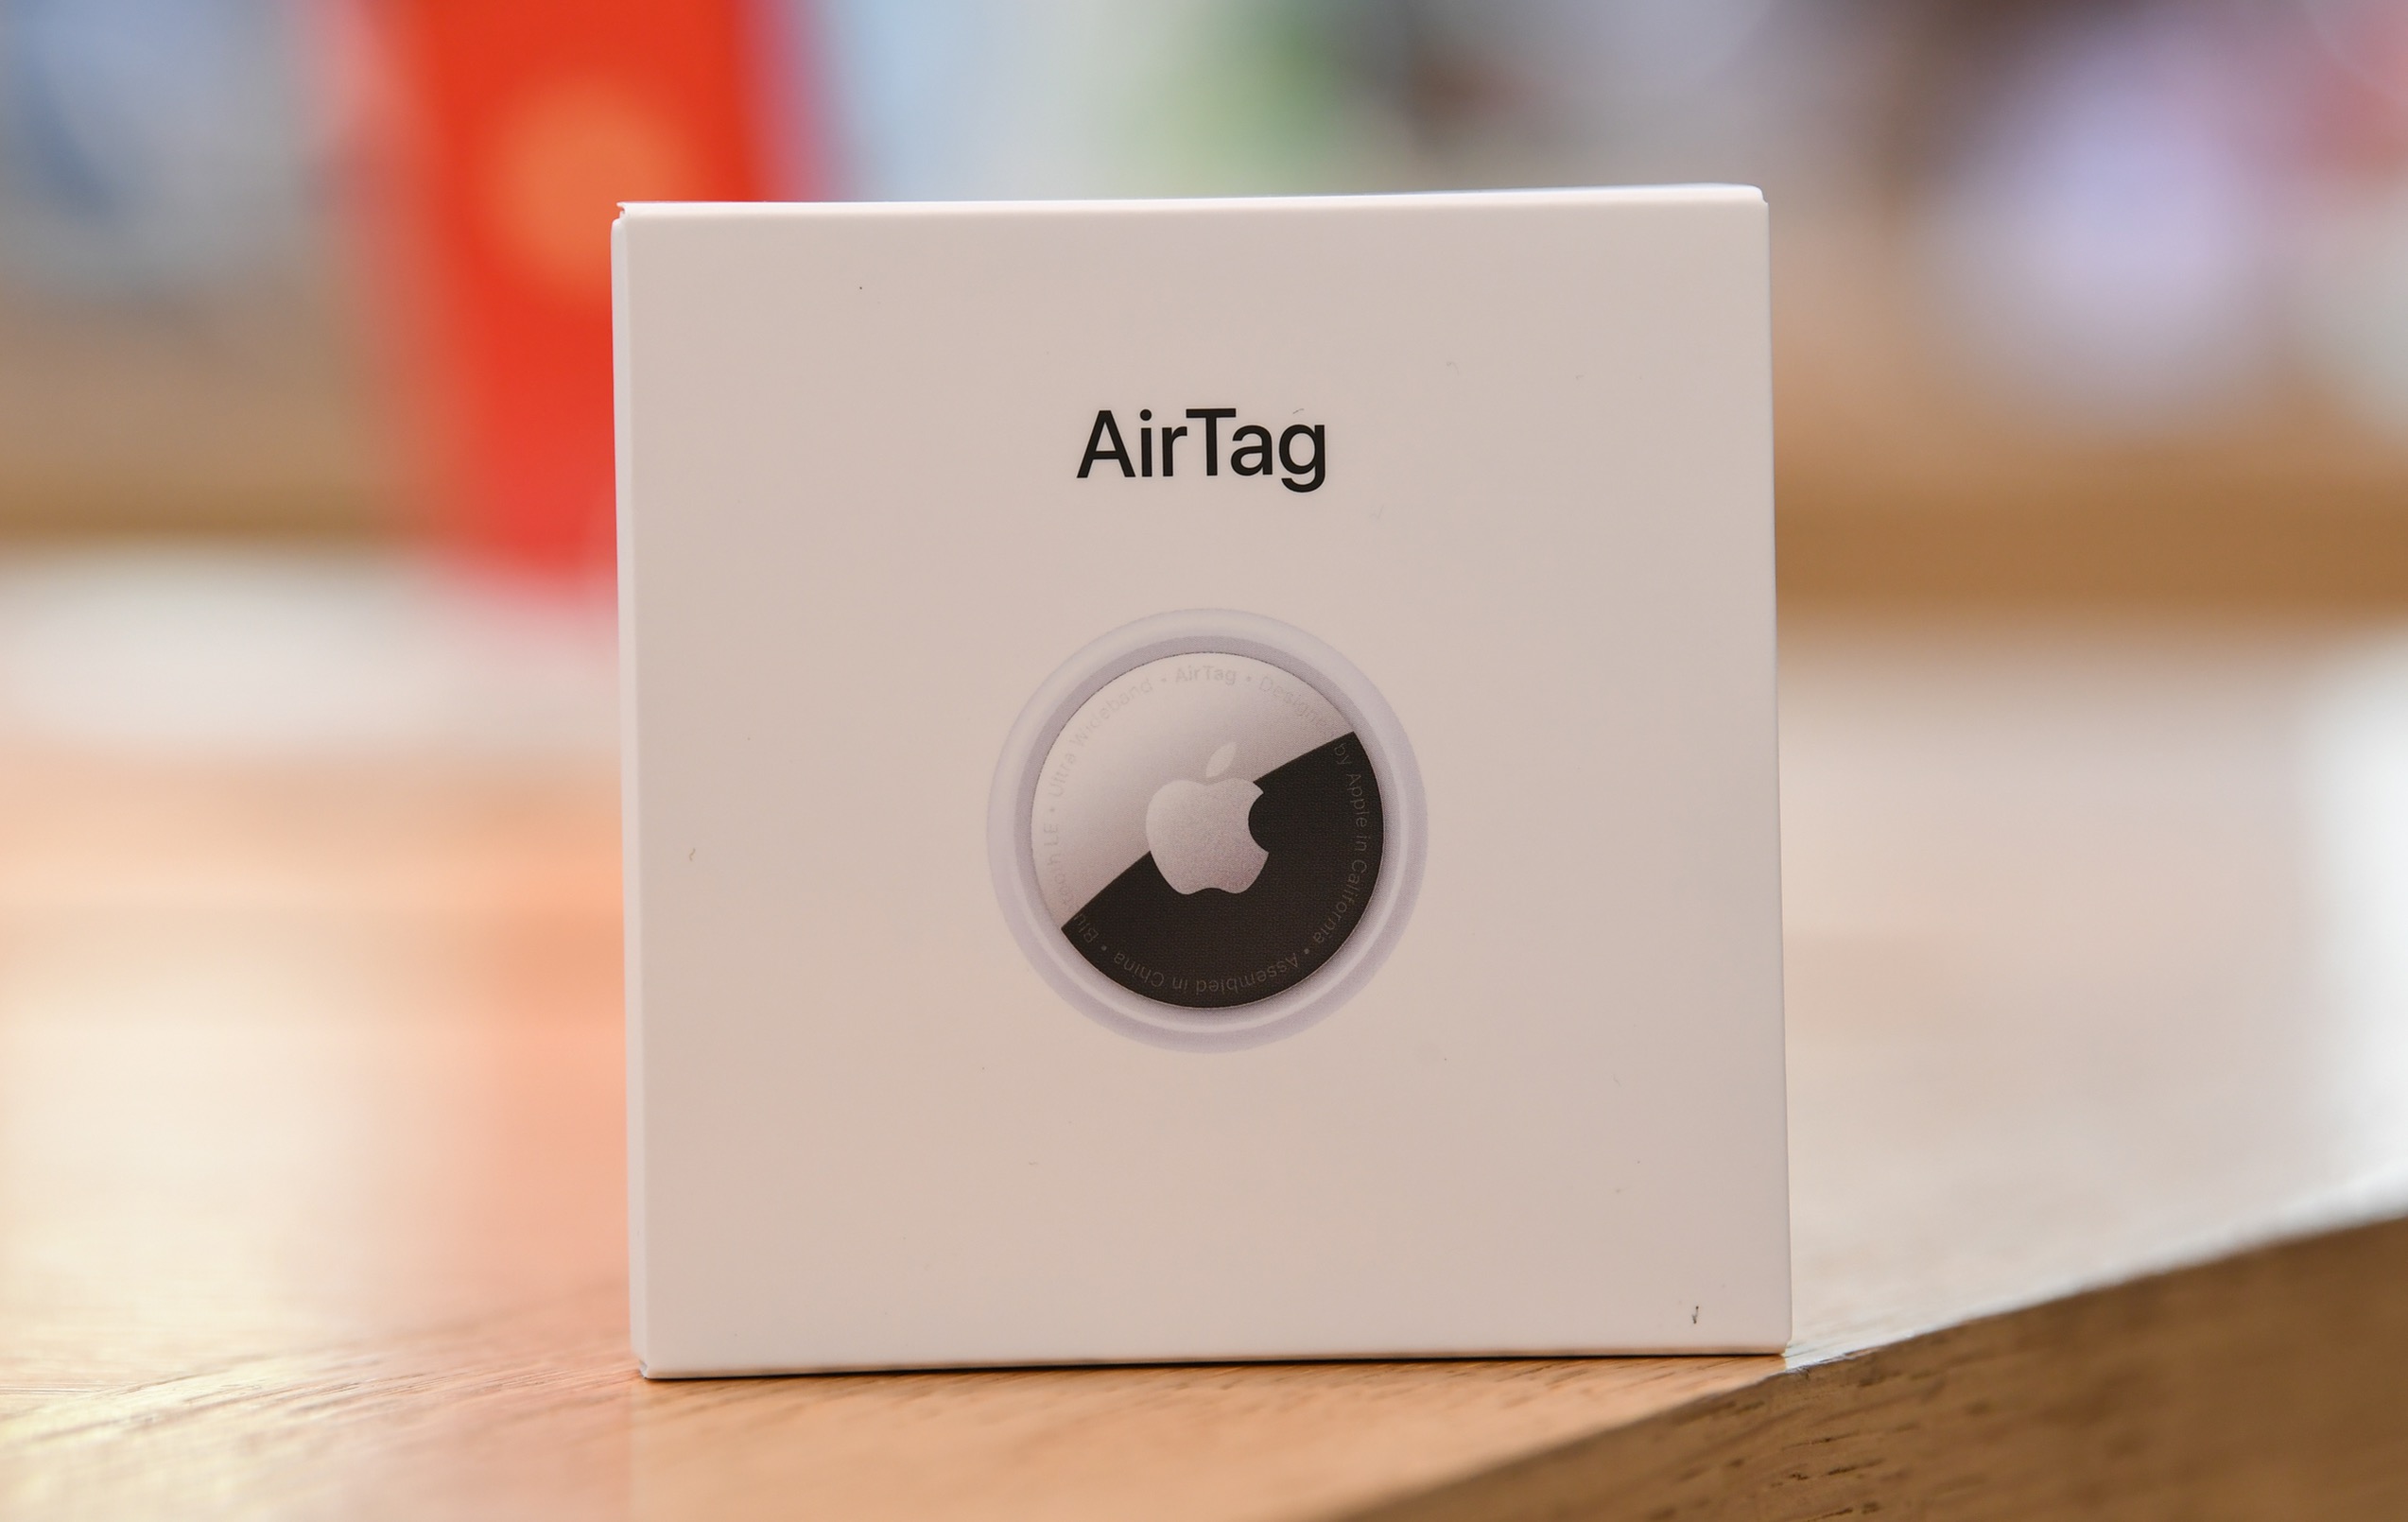 Airtag Apple's AirTags